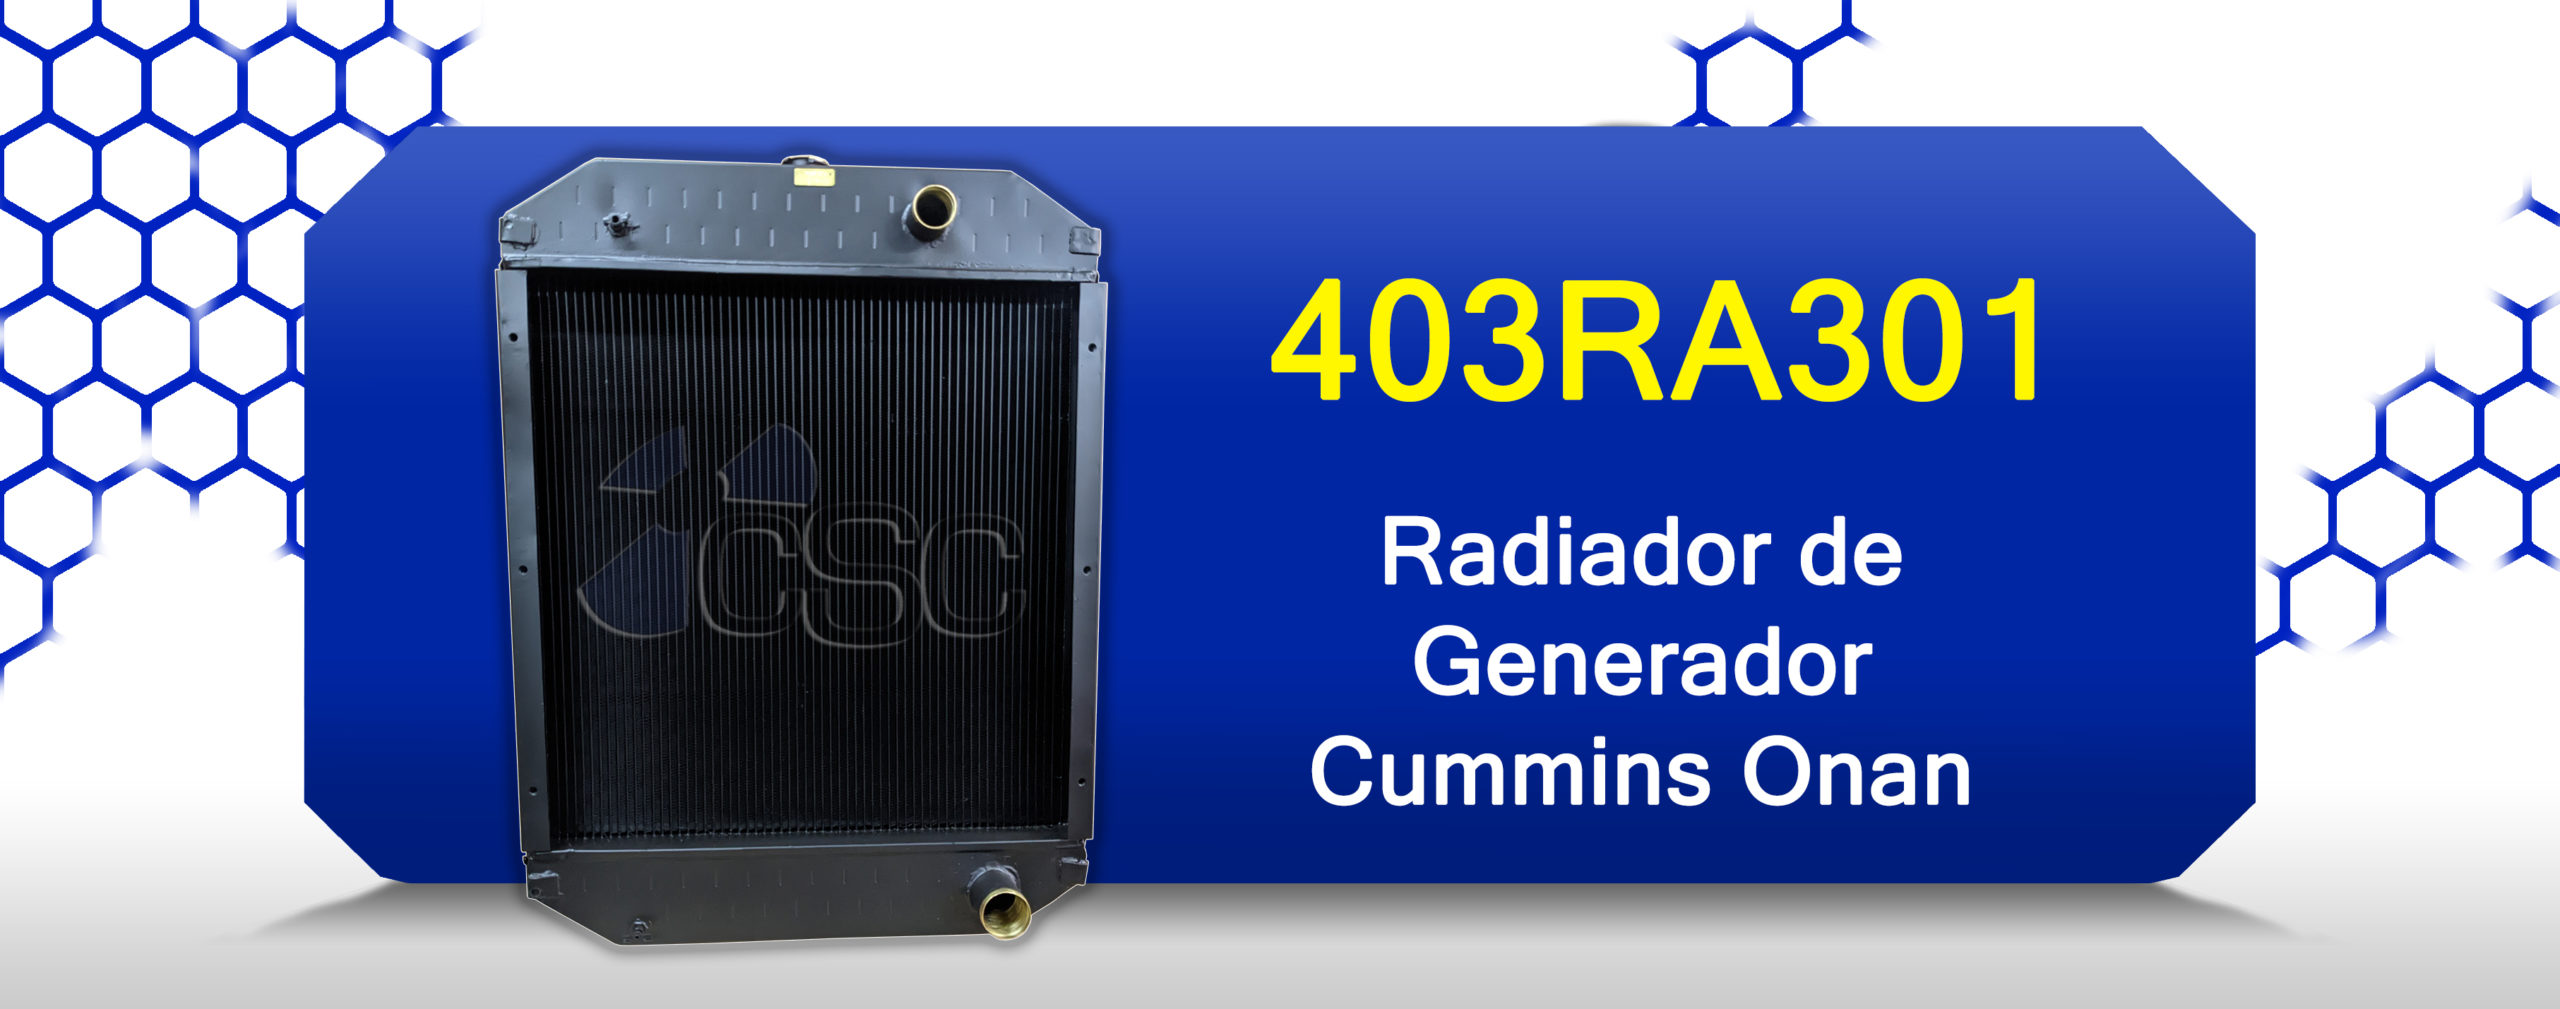 Radiador 403RA301 para generador Cummins Onan de 80kw